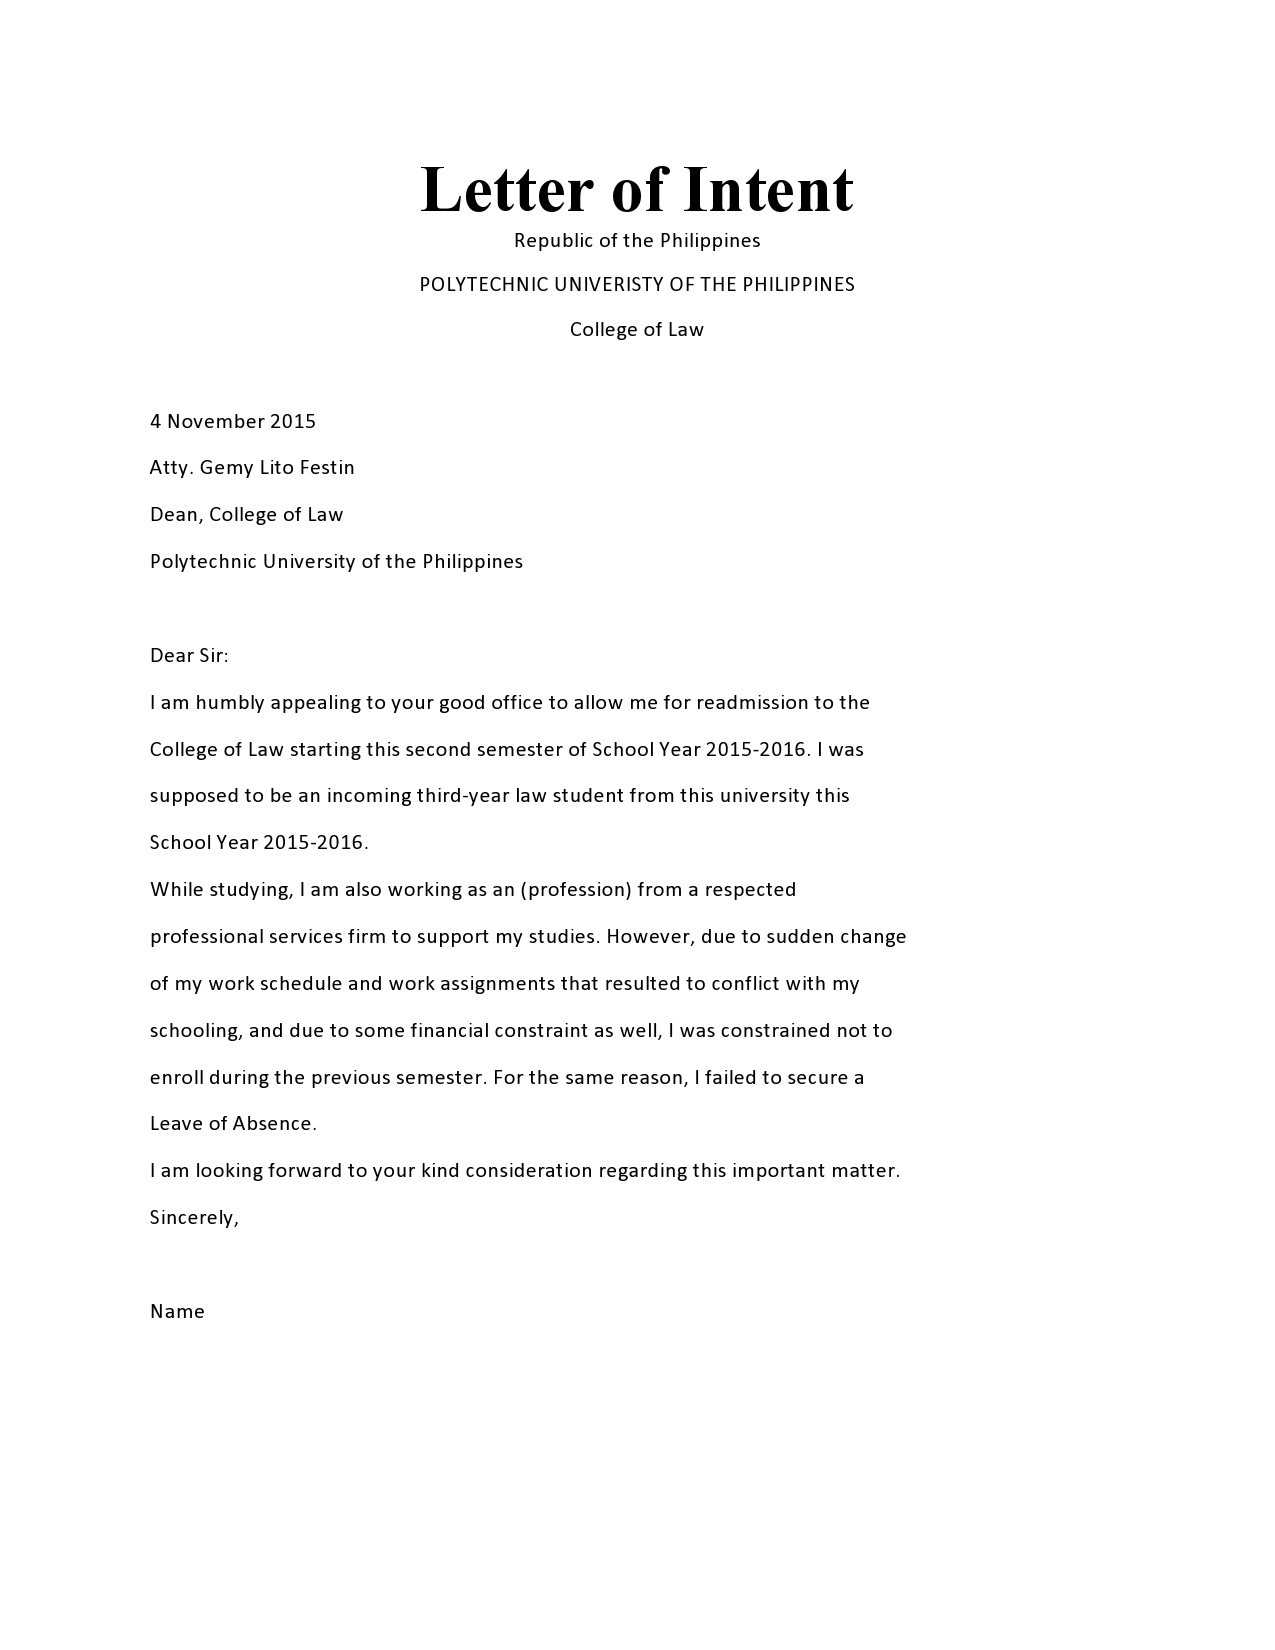 sample letter of intent for graduate program